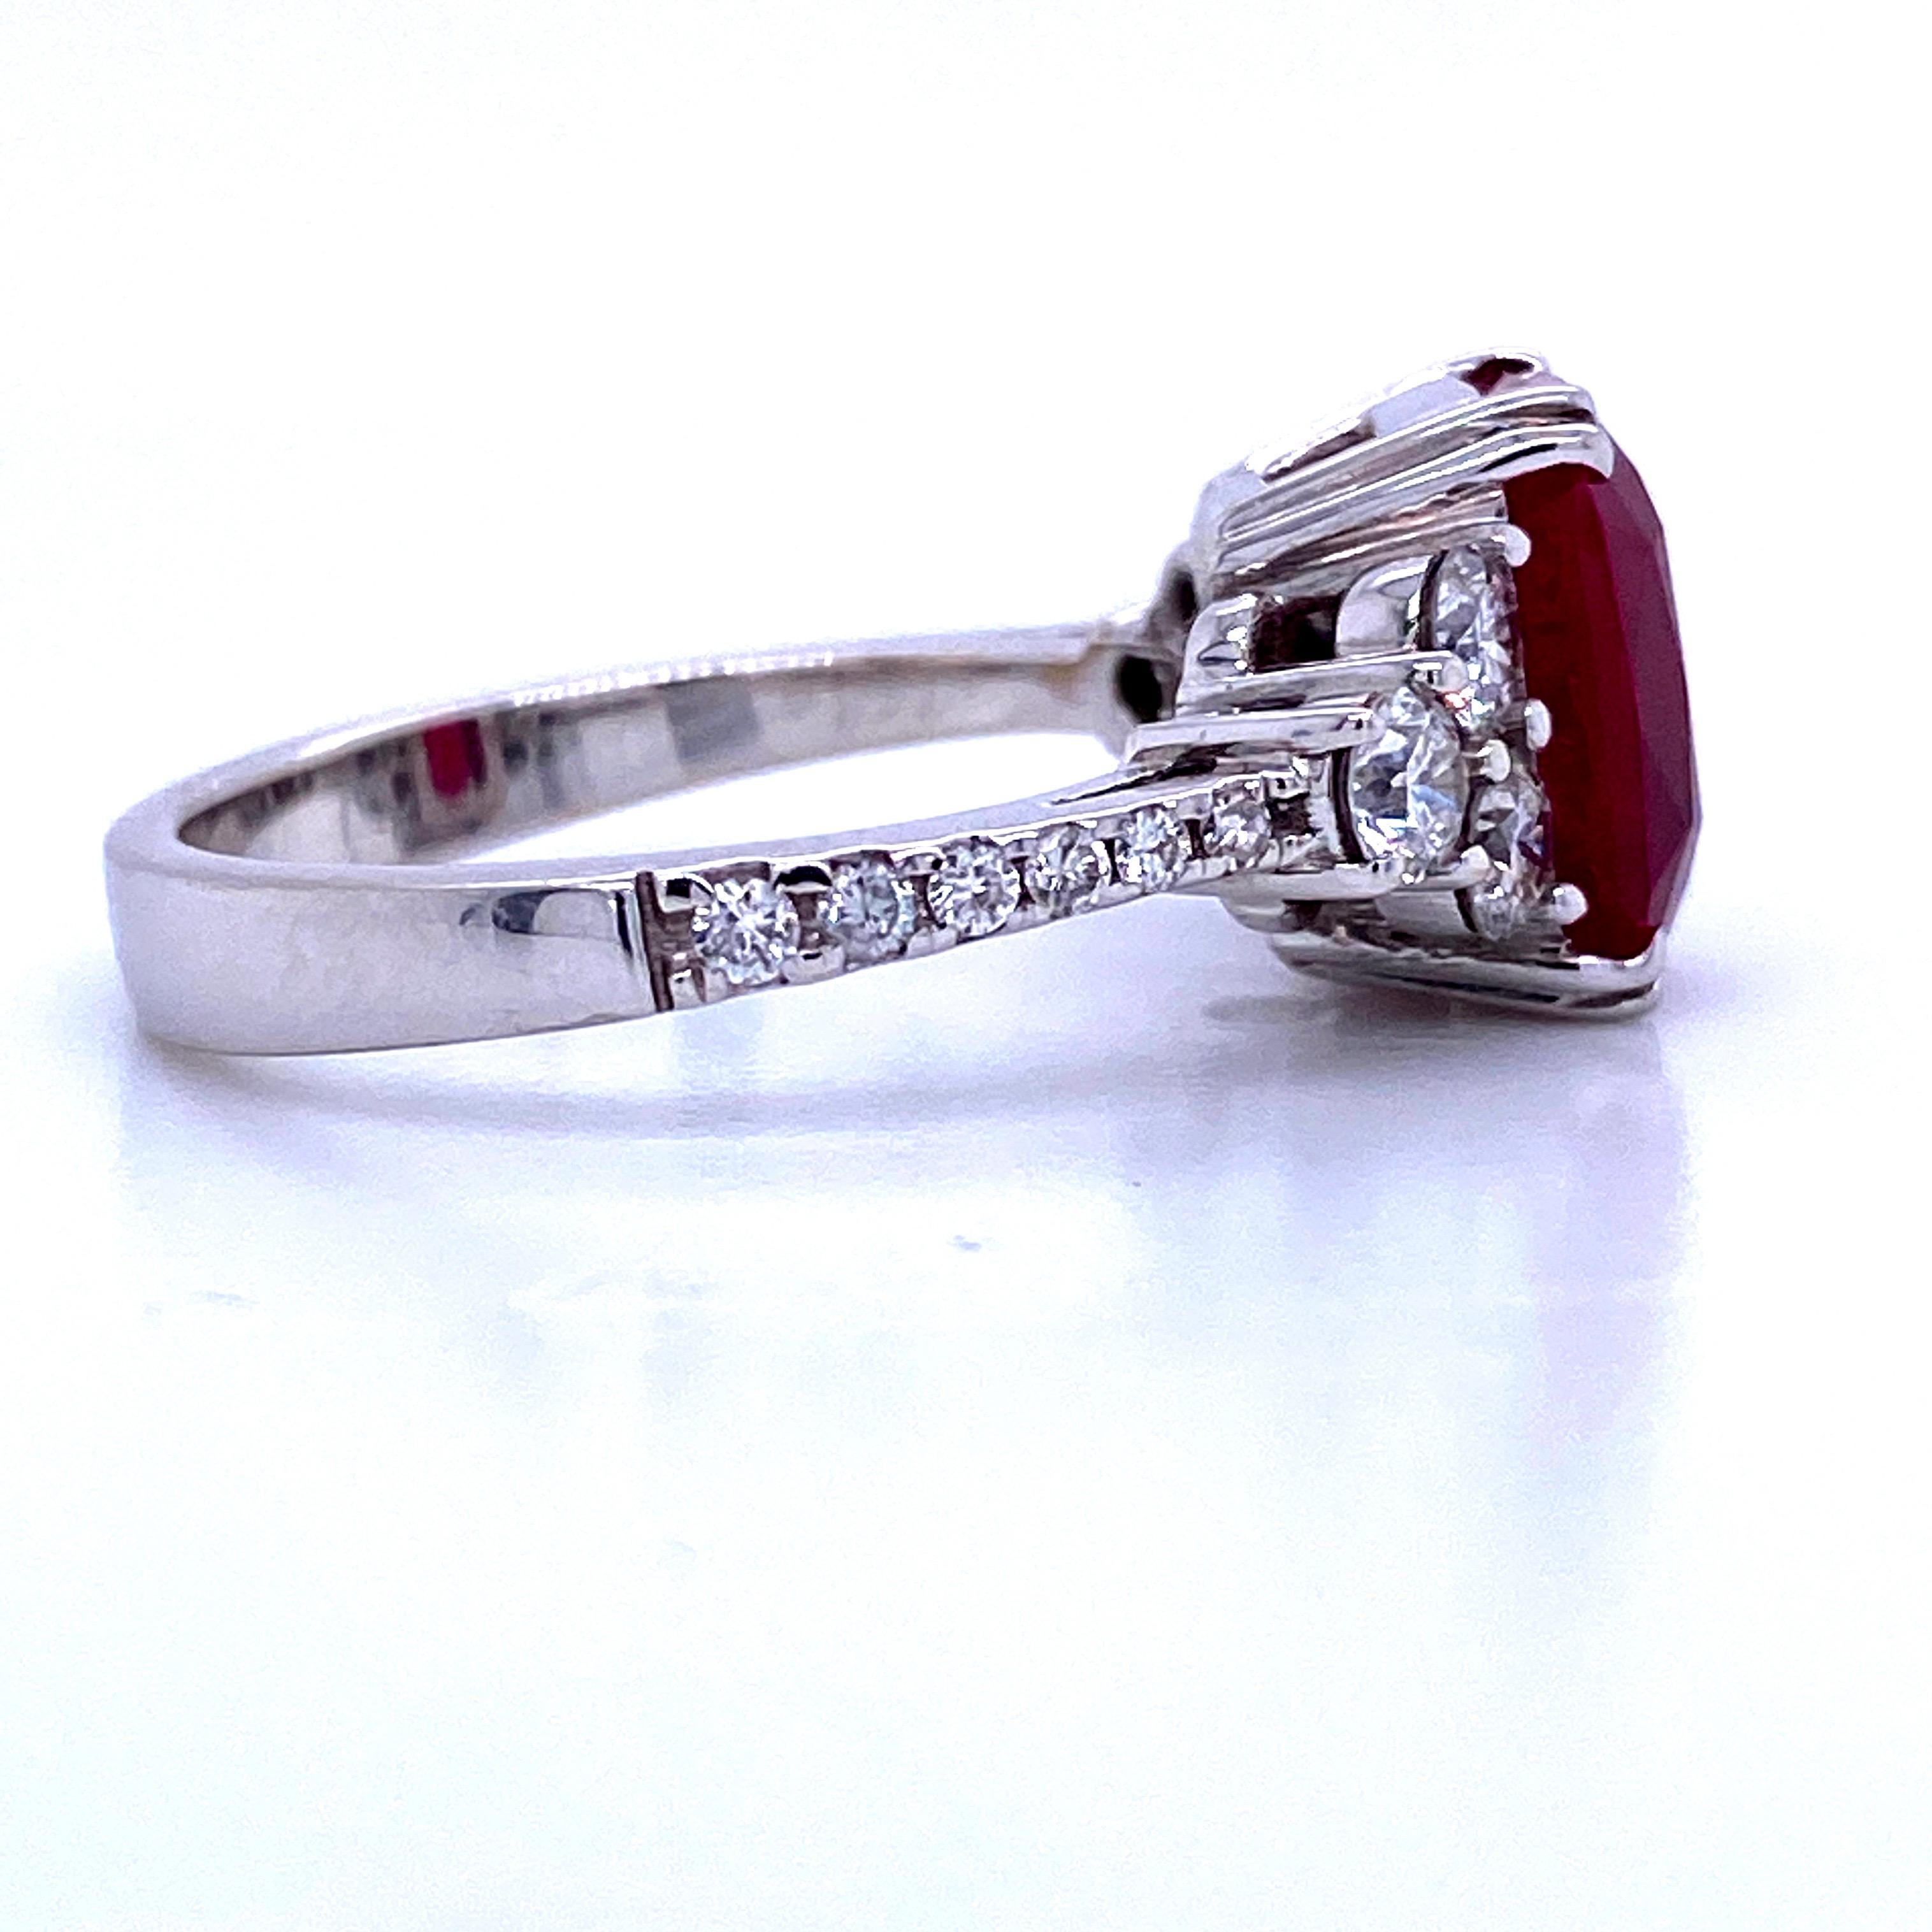 Women's Burma Ruby Diamond Ring 4.79 Carat AGL Certified 18 Karat White Gold